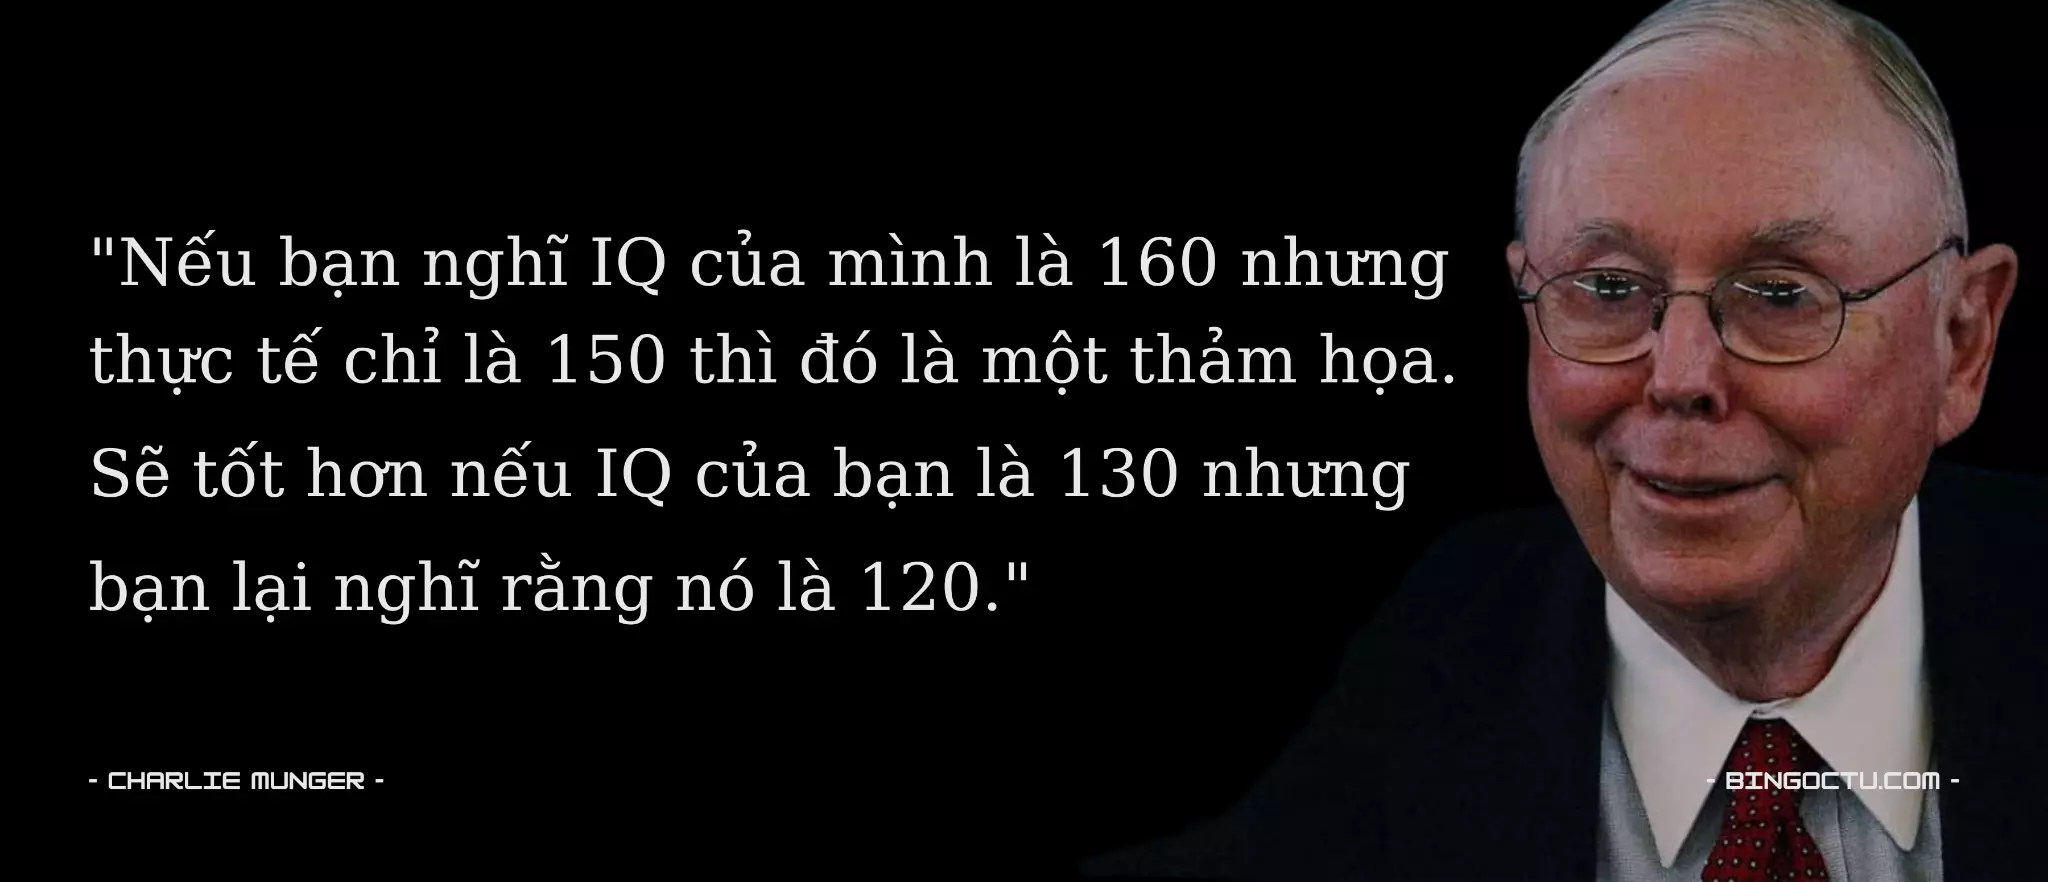 "Nếu bạn nghĩ IQ của mình là 160 nhưng
thực tế chỉ là 150 thì đó là một thảm họa.
Sẽ tốt hơn nếu IQ của bạn là 130 nhưng
bạn lại nghĩ rằng nó là 120."